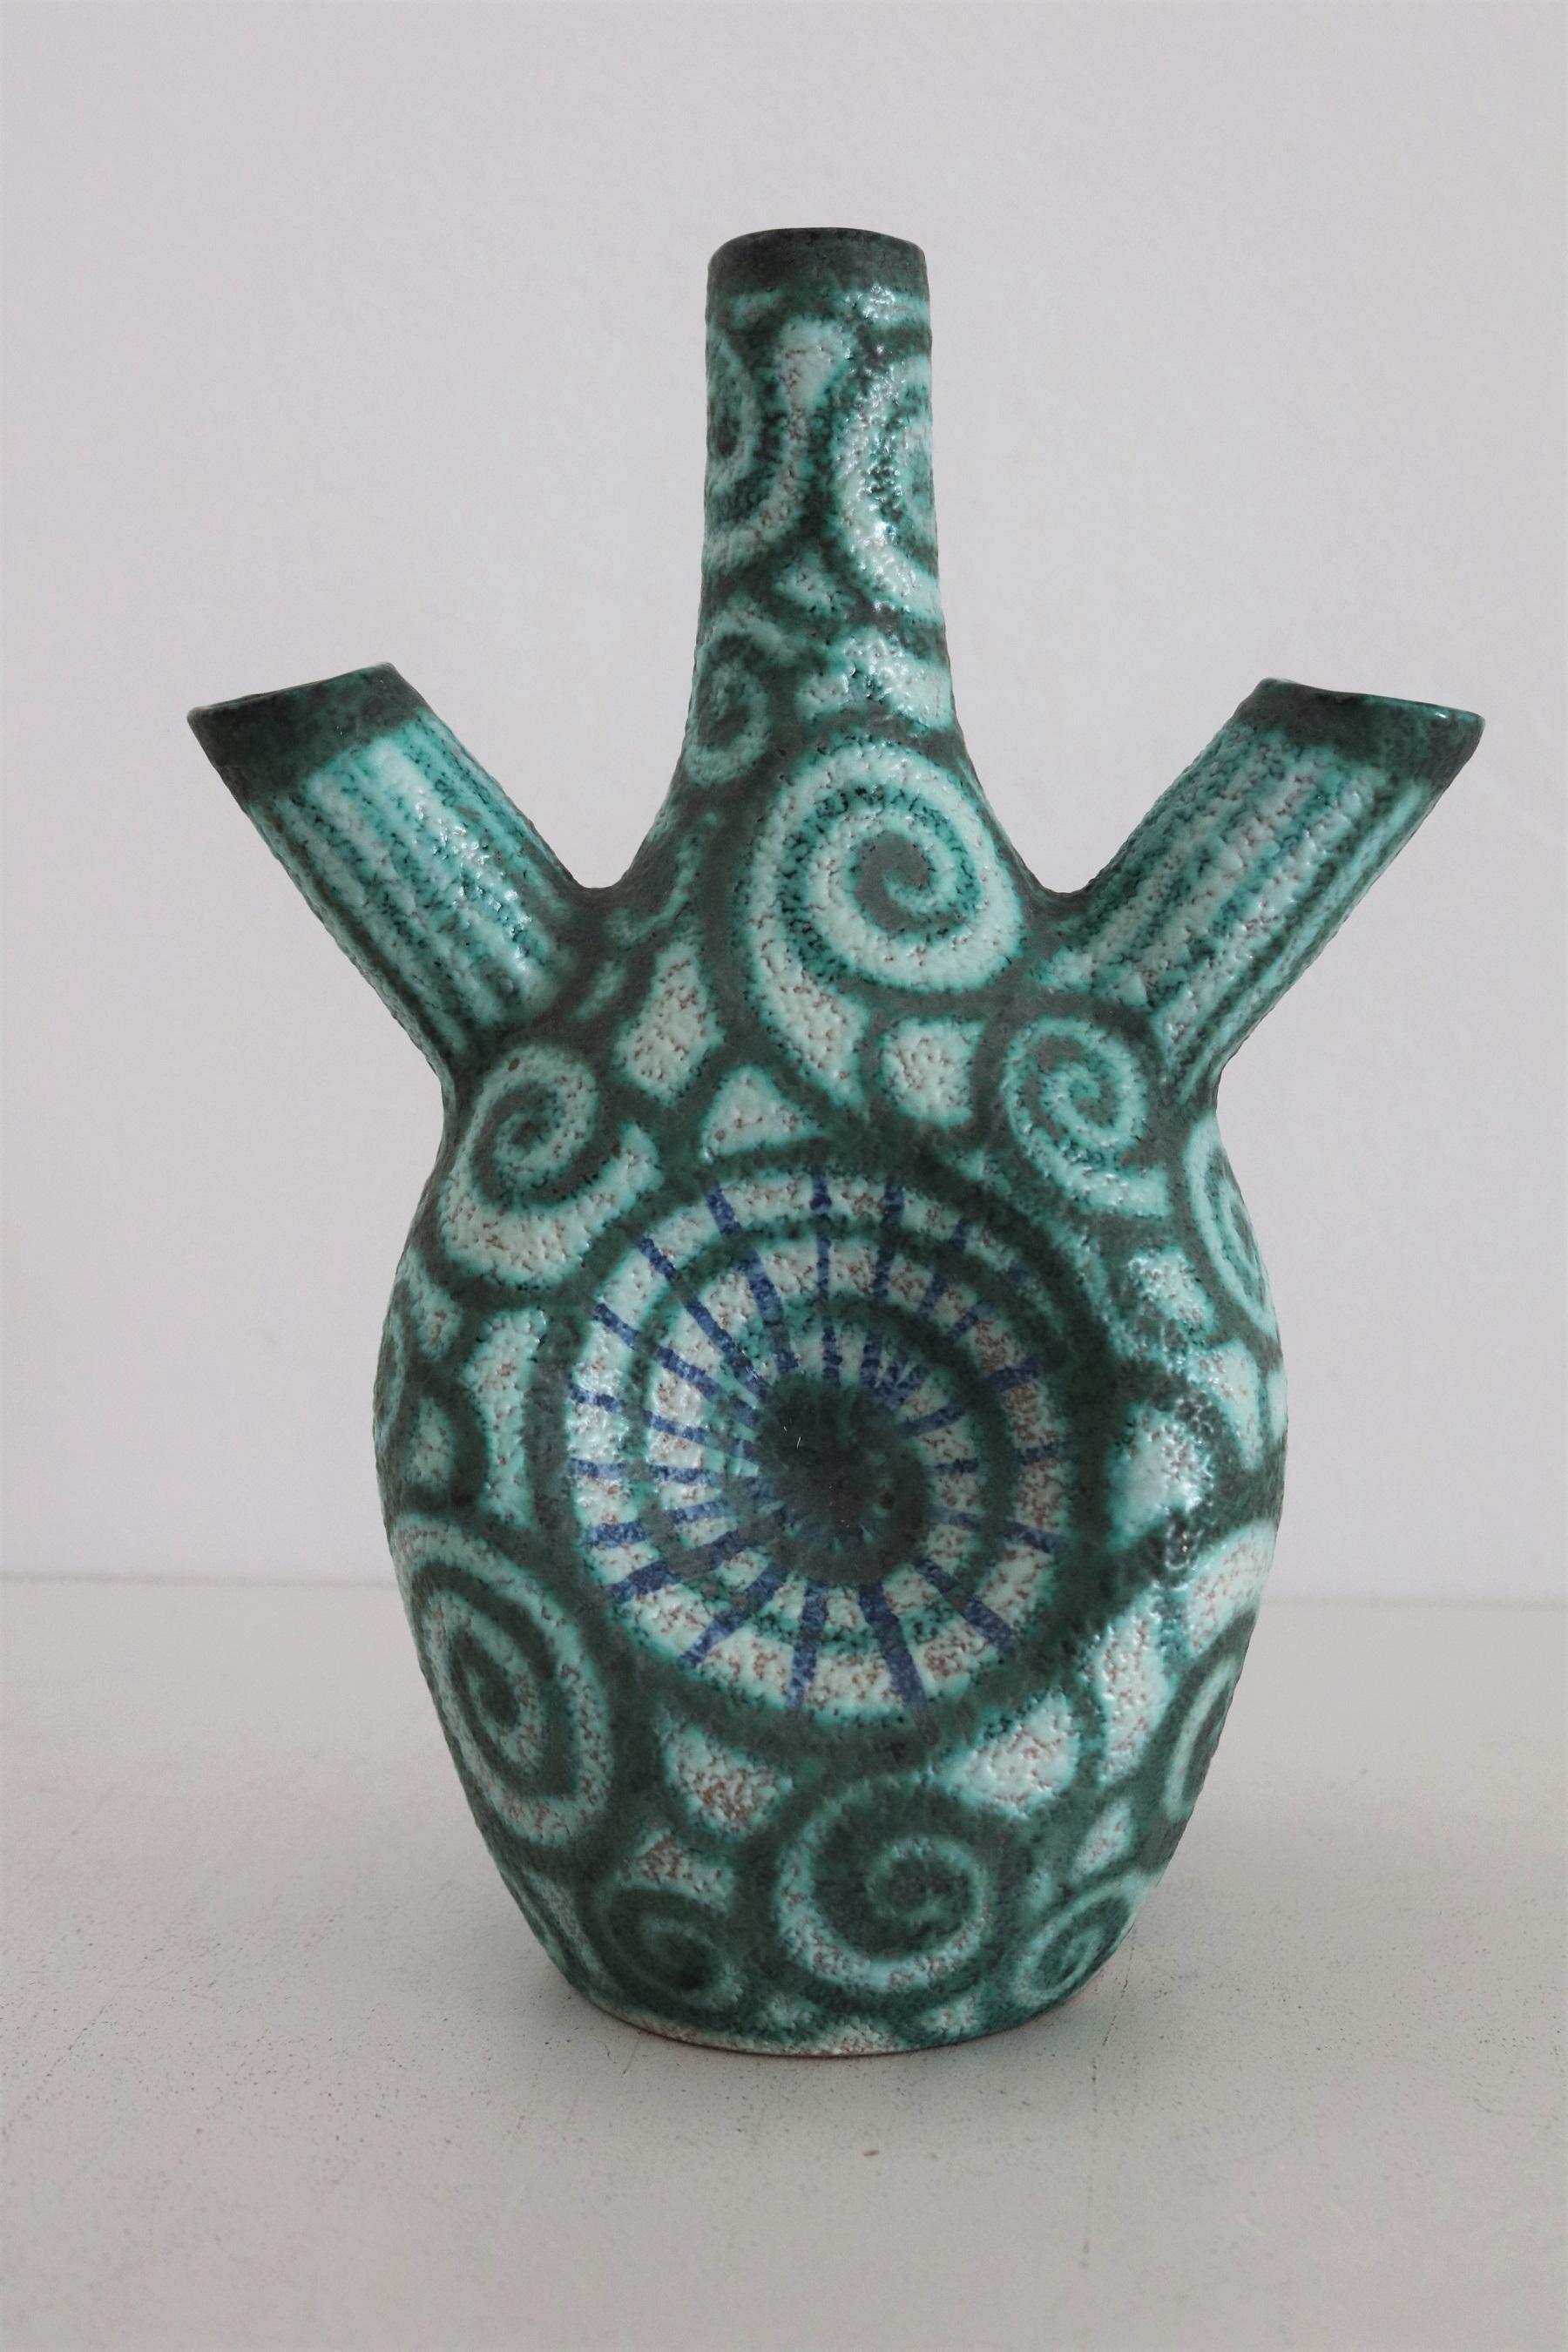 Ceramic Giuseppe Barile Albisola Italian Midcentury Modern Pottery Vase, 1950s For Sale